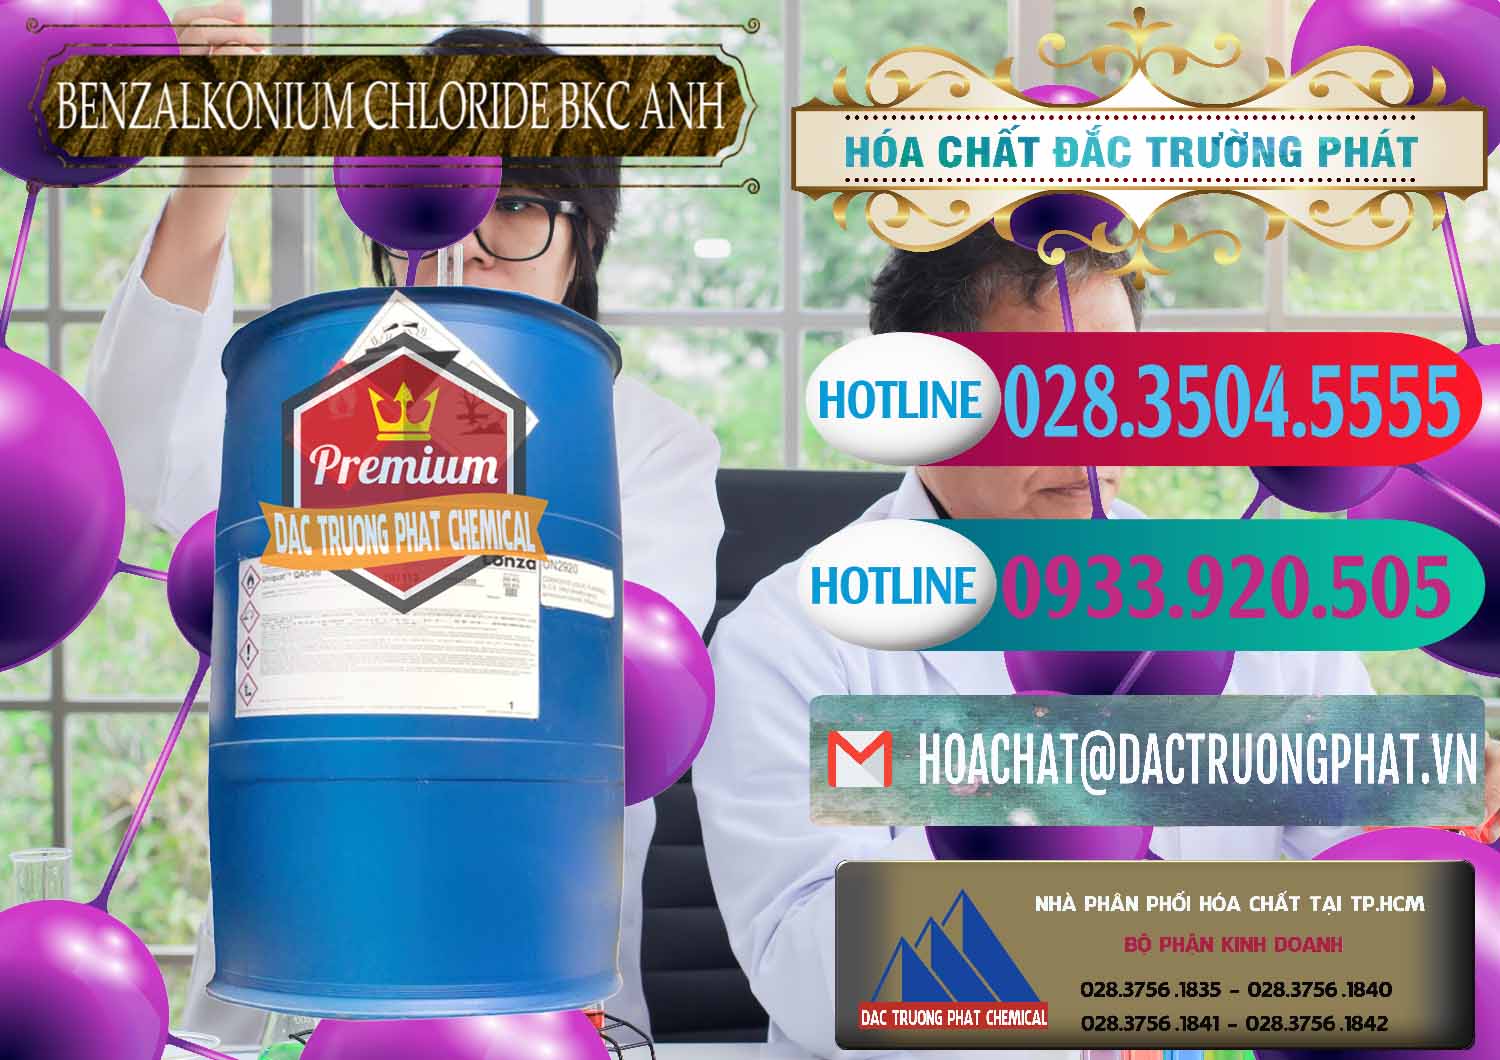 Nơi nhập khẩu ( bán ) BKC - Benzalkonium Chloride 80% Anh Quốc Uk Kingdoms - 0457 - Cty kinh doanh ( phân phối ) hóa chất tại TP.HCM - truongphat.vn